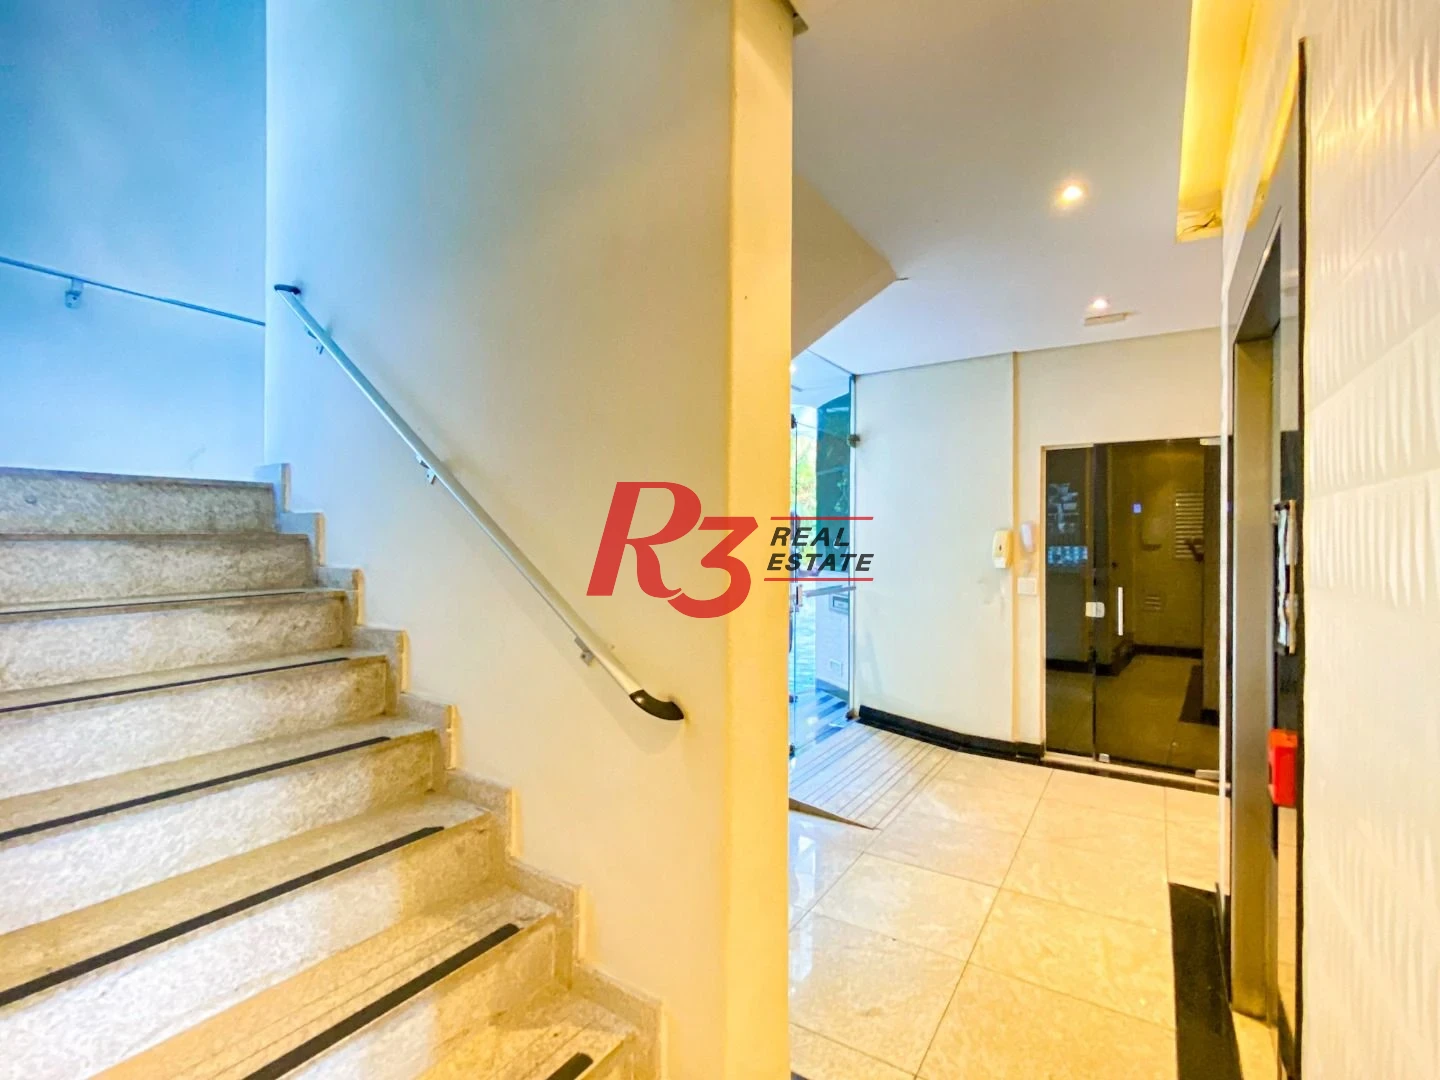 Apartamento com 4 dormitórios à venda, 235 m² por R$ 1.600.000,00 - Ilha Porchat - São Vicente/SP